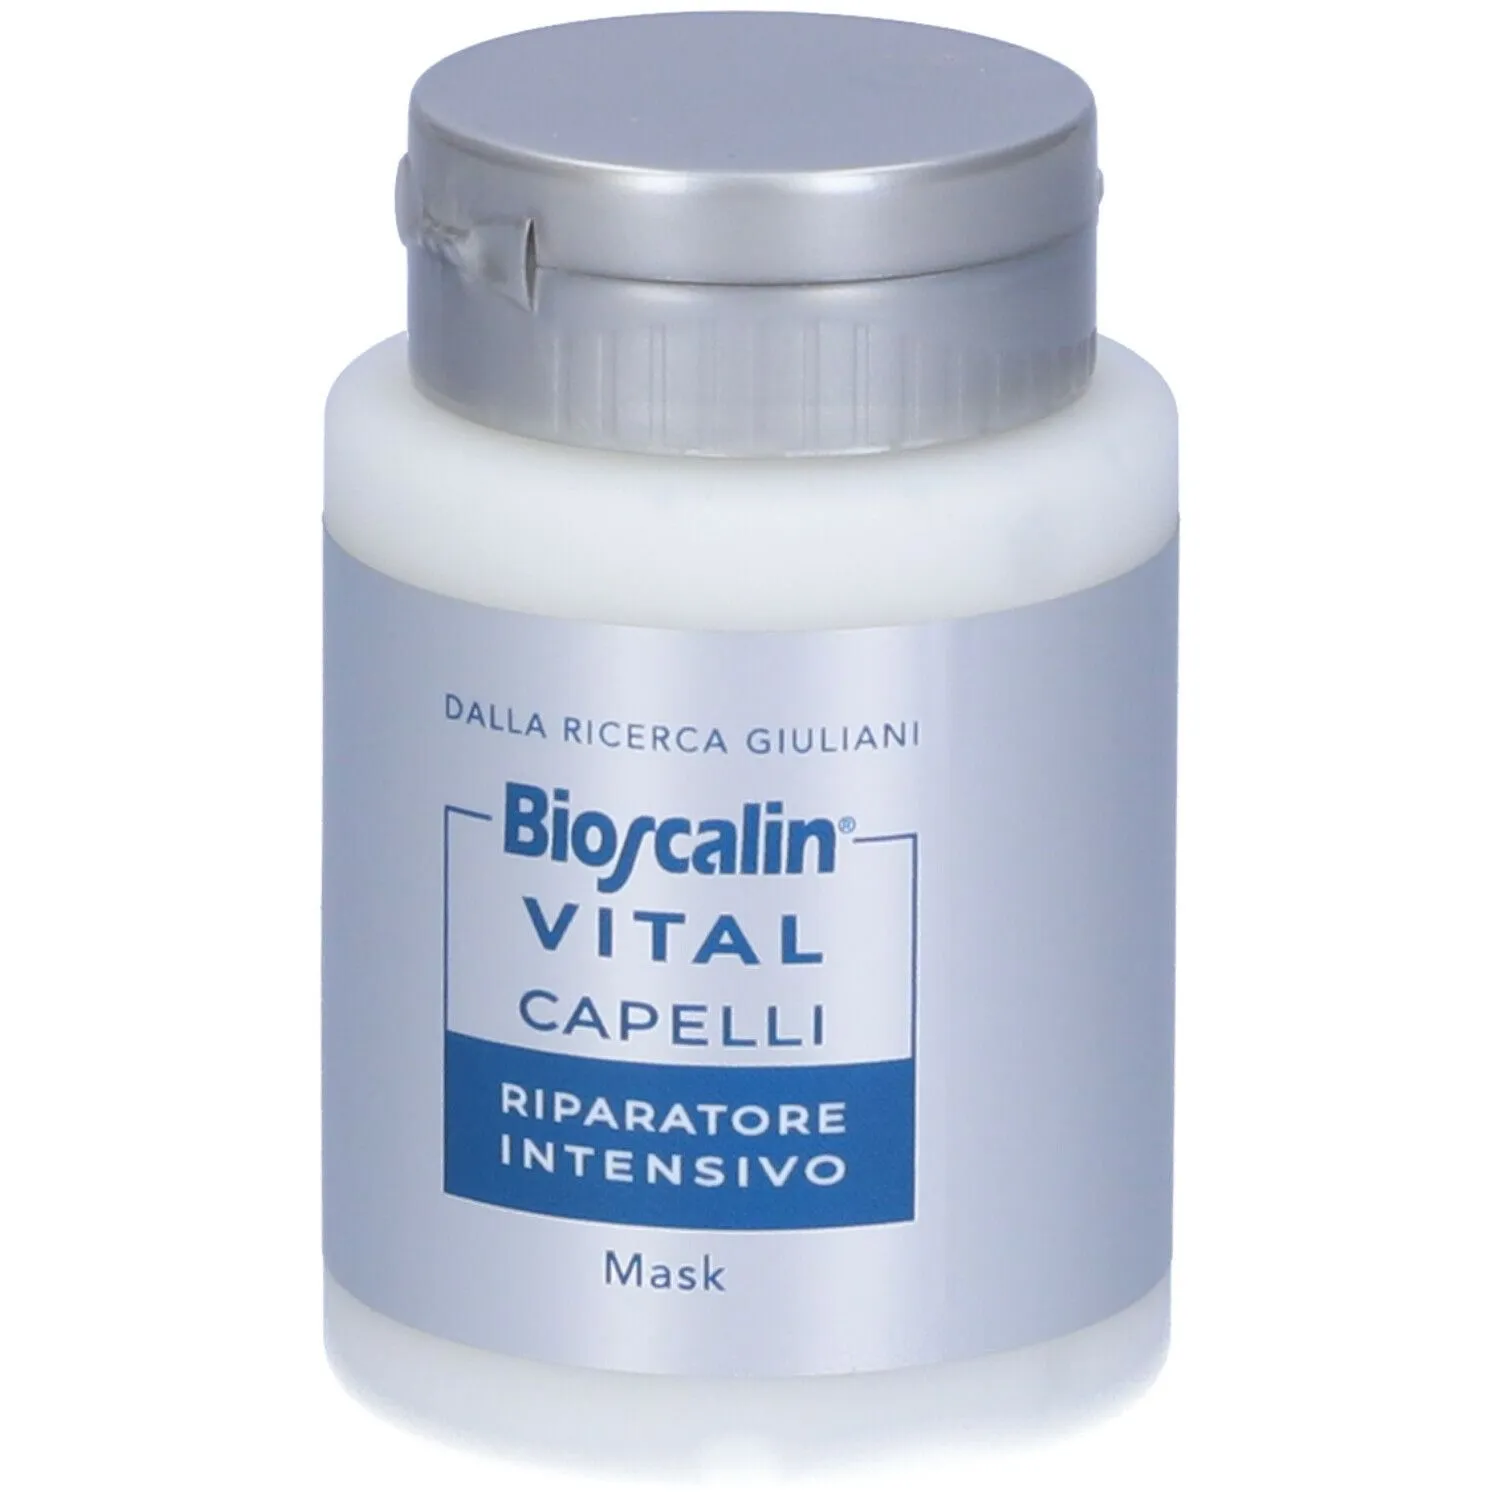 Bioscalin® VITAL Capelli Riparatore Intensivo